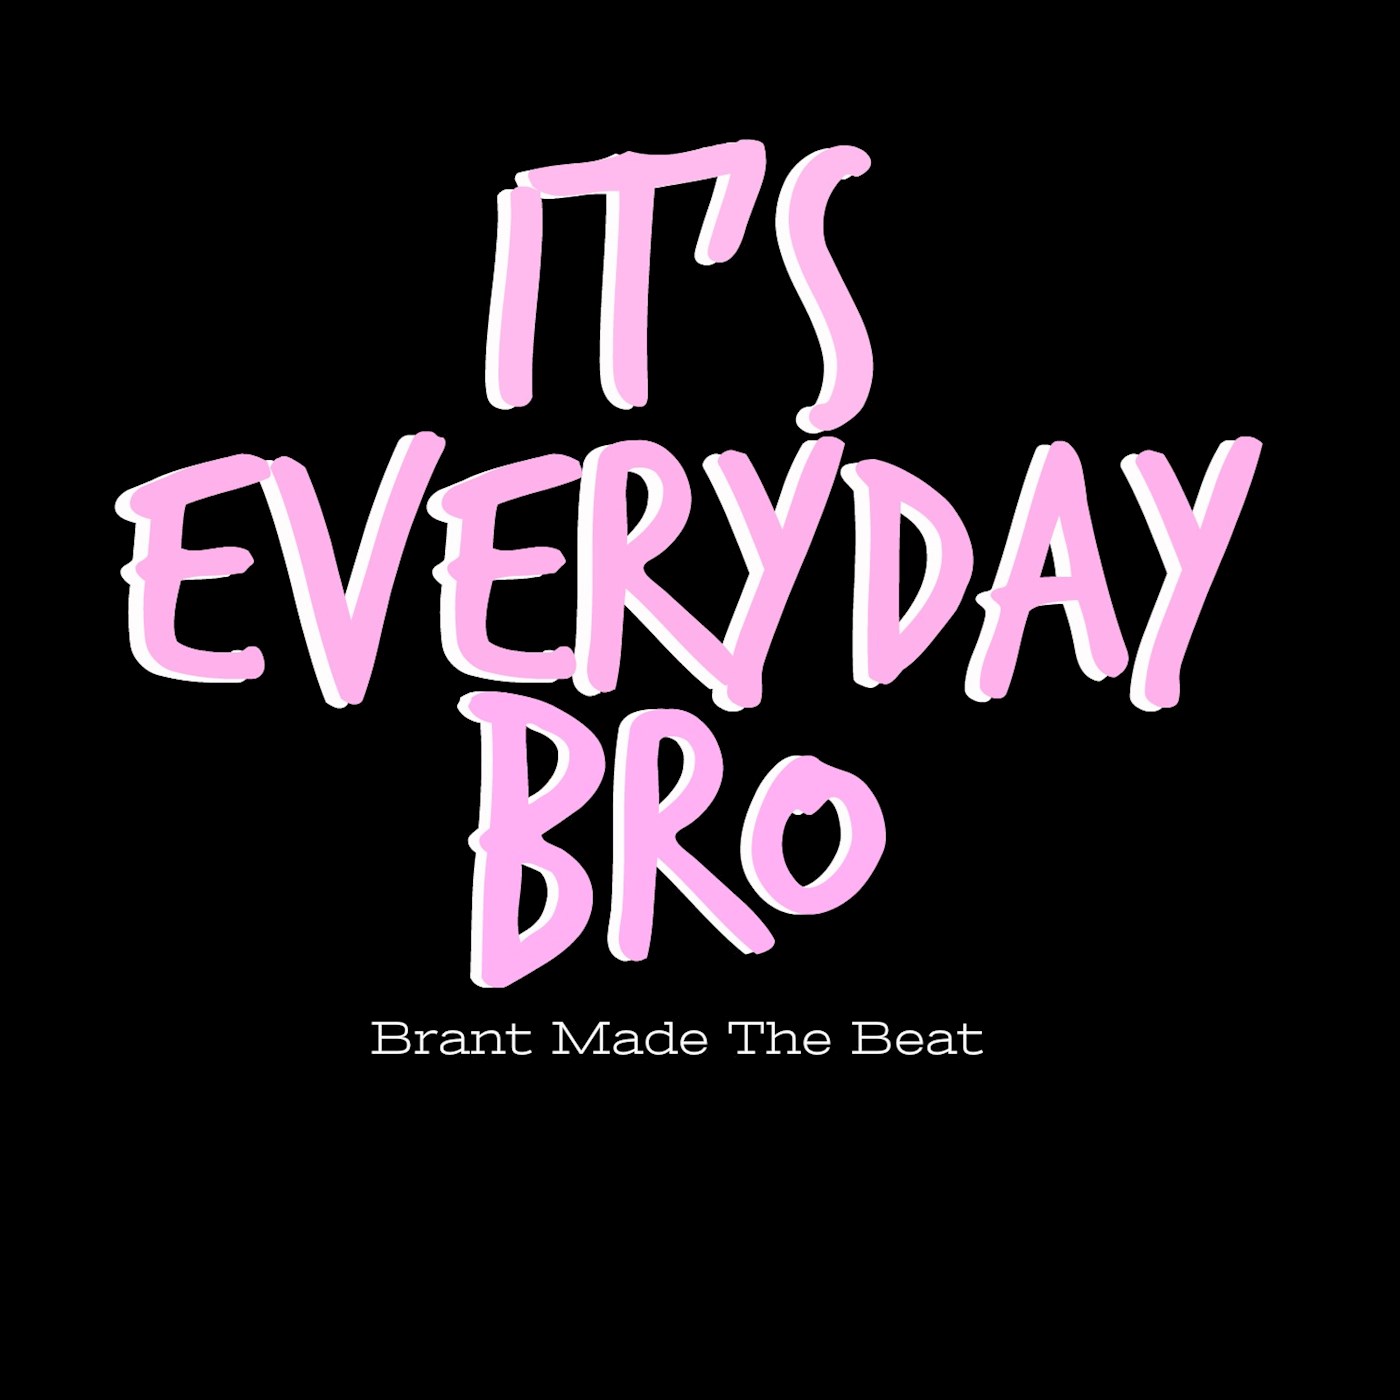 It's Everyday Bro